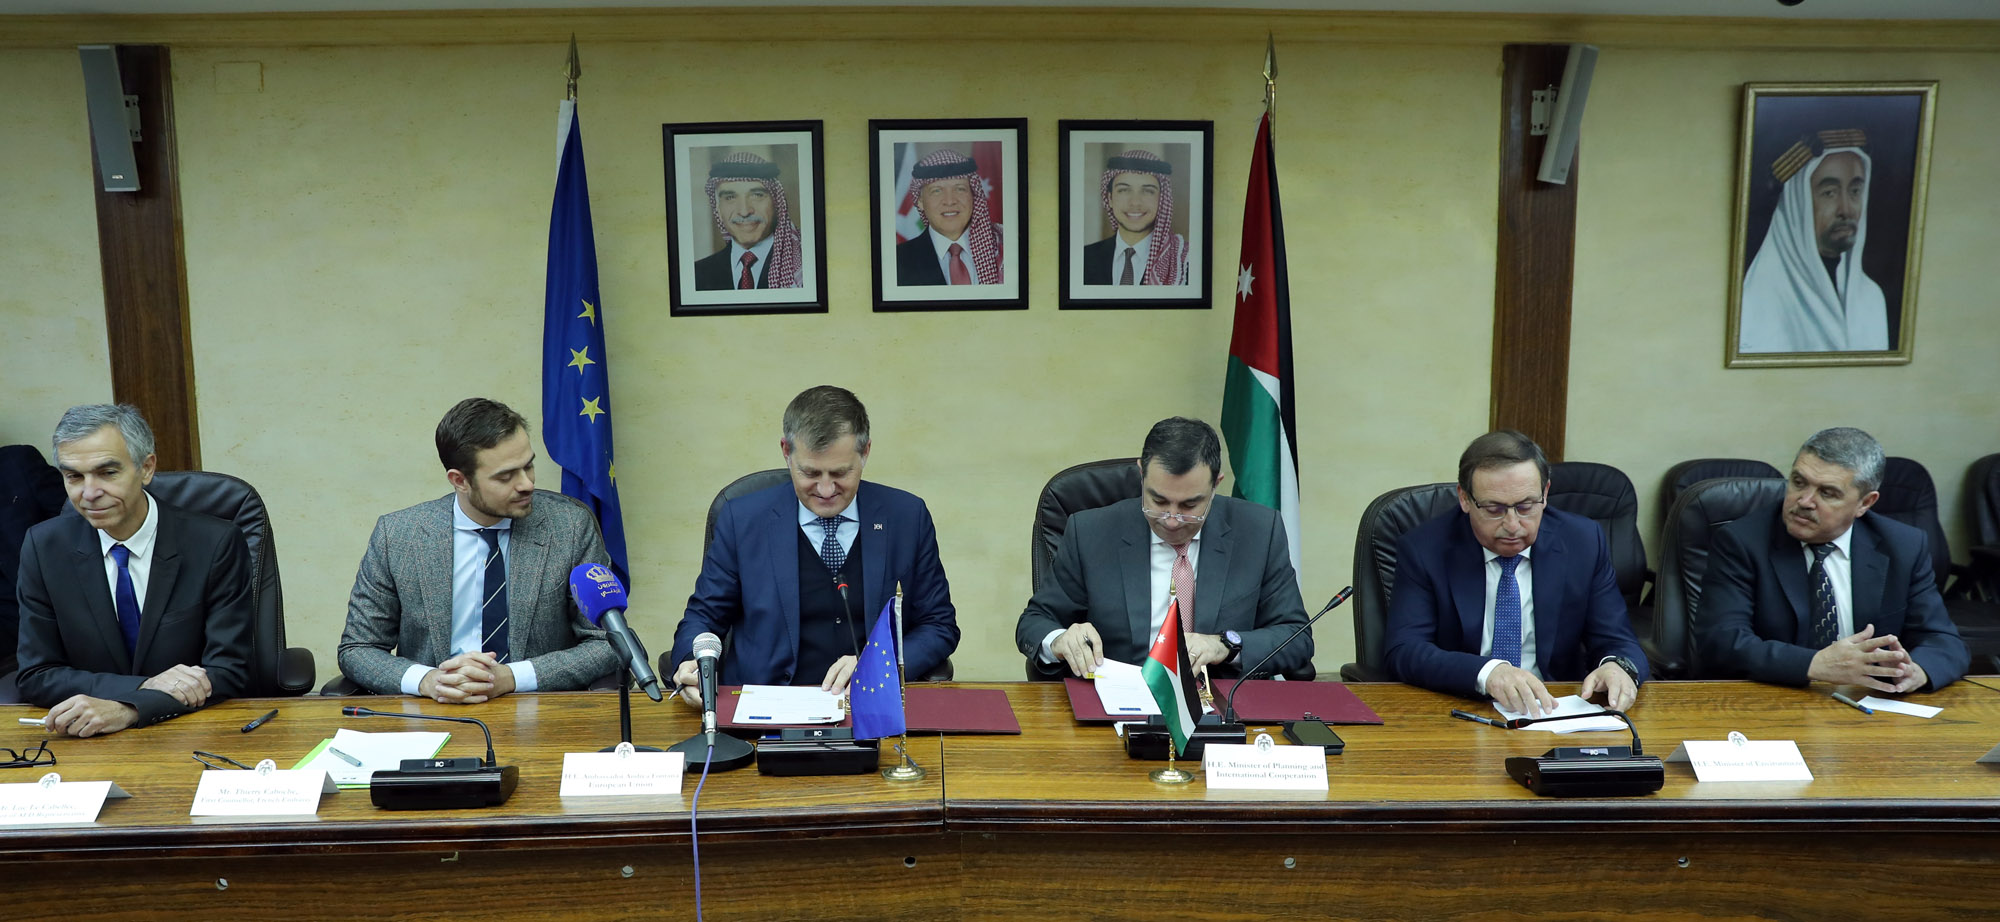 وزير التخطيط الاردني عماد الفاخوري وسفير الاتحاد الاوروبي لدى عمان اندريا فونتانا خلال مراسم توقيع الاتفاقية والاعلان المشترك